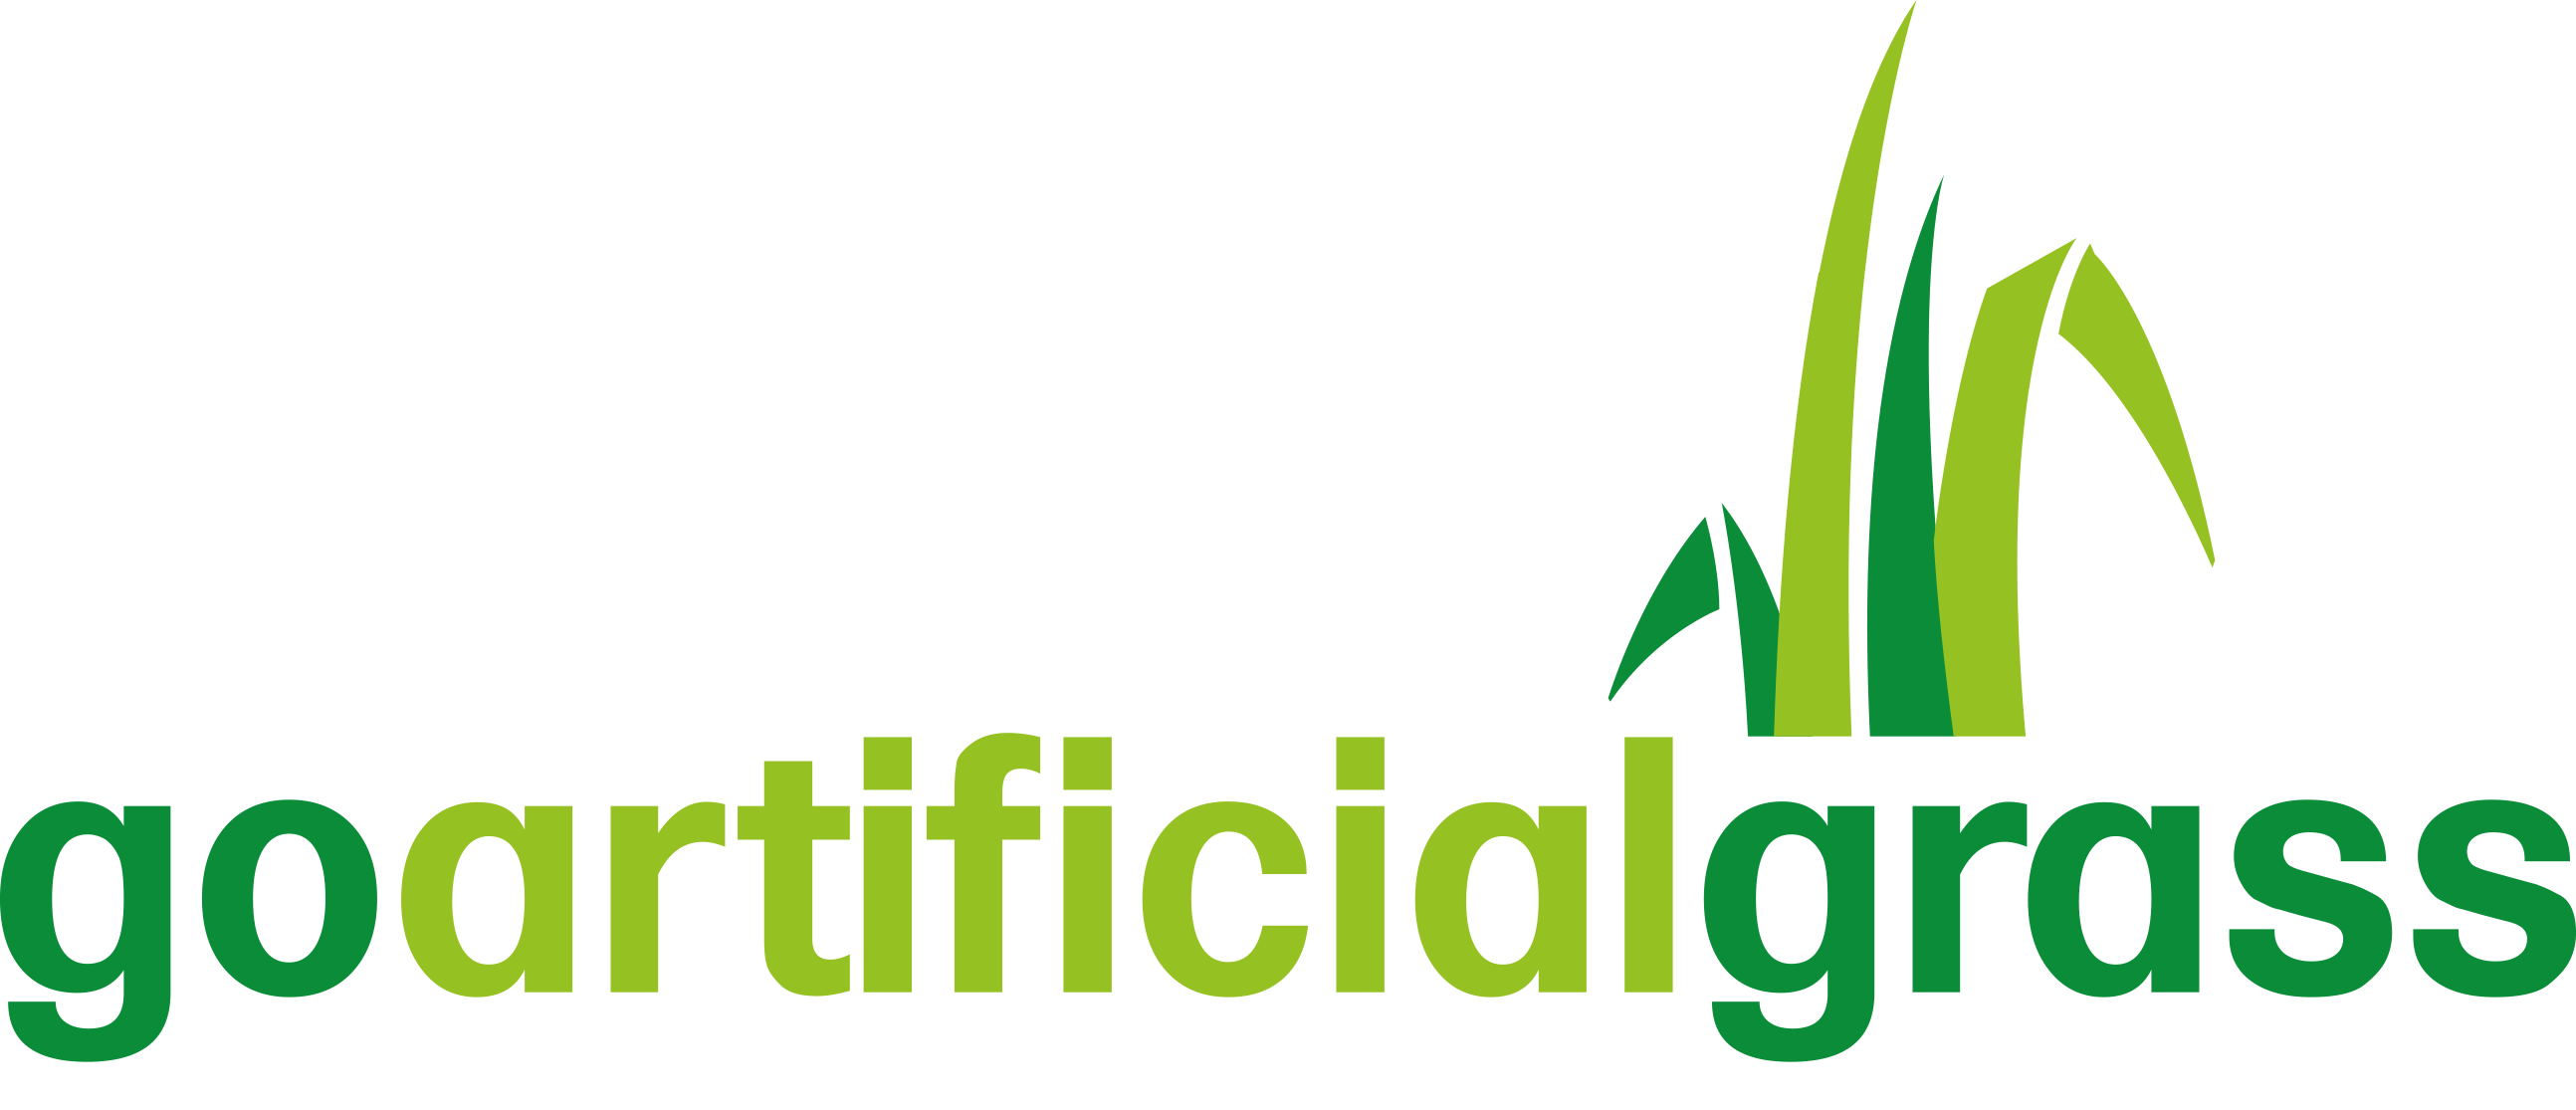 Go Artificial Grass Company Logo